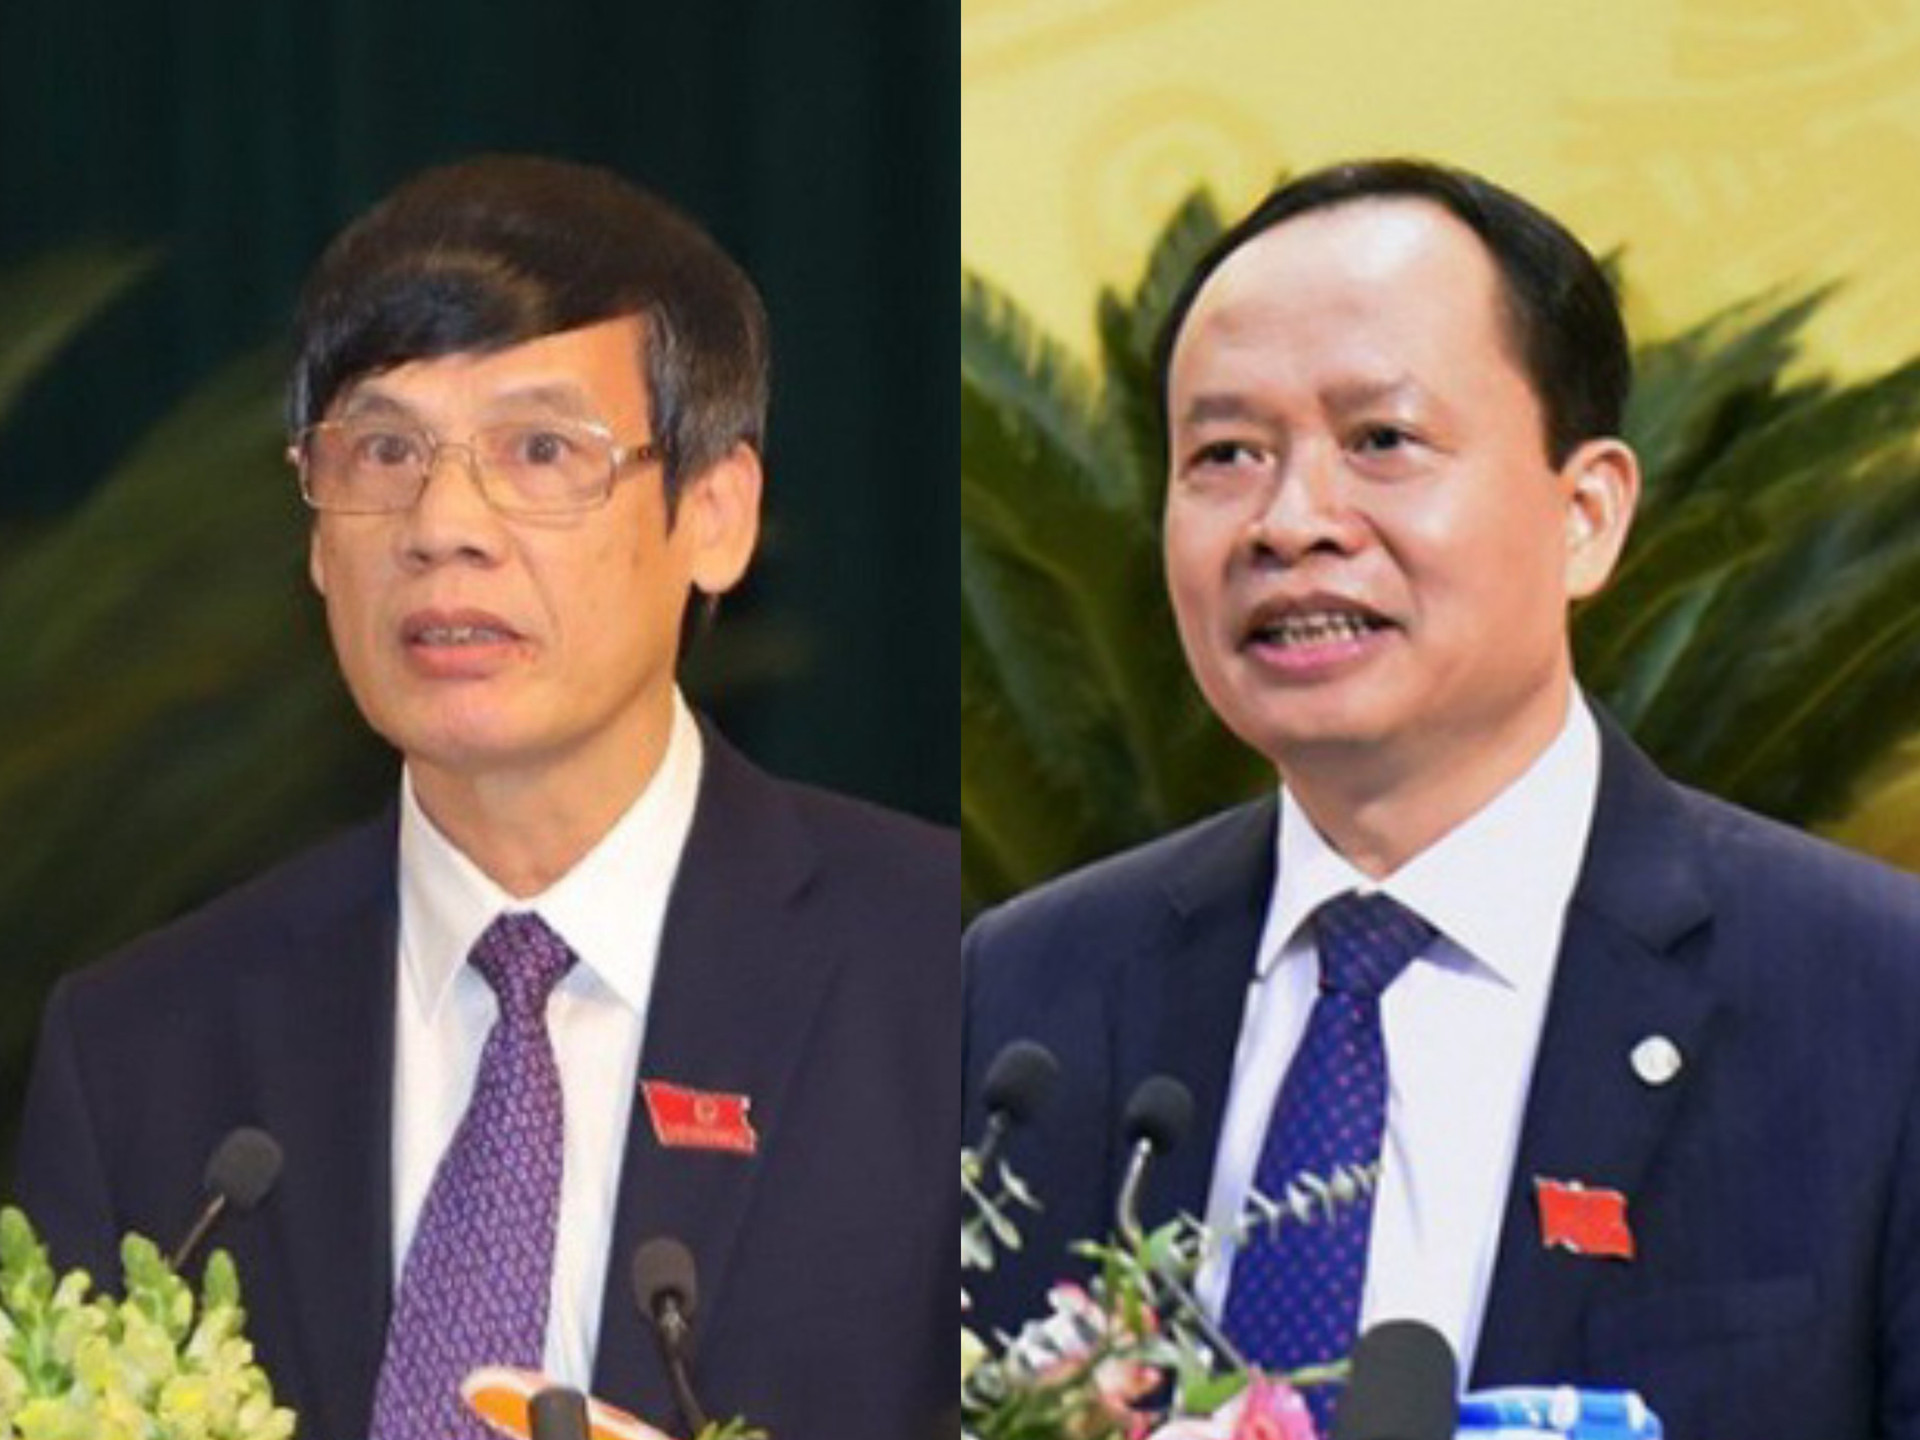 Sai phạm ở dự án Hạc Thành Tower khiến loạt cựu quan chức tỉnh Thanh Hóa bị khởi tố - 1